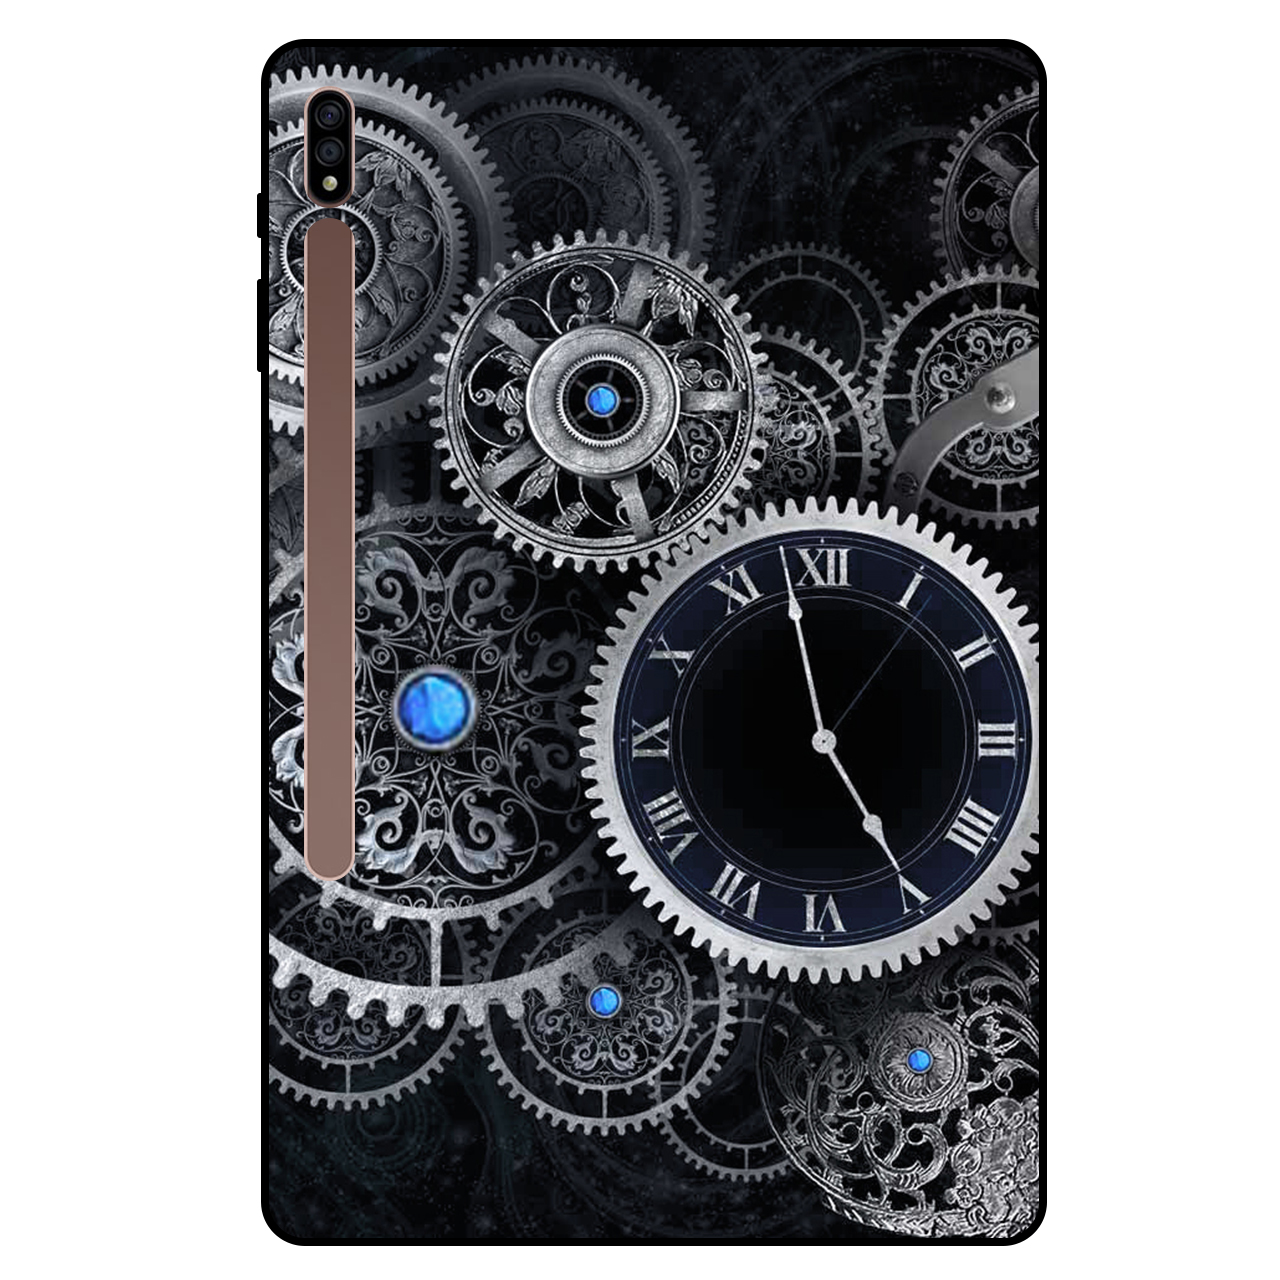 کاور مگافون طرح ساعت مدل 7741 مناسب برای تبلت سامسونگ Galaxy Tab S7 Plus 2020 / T970 / T976 / T975